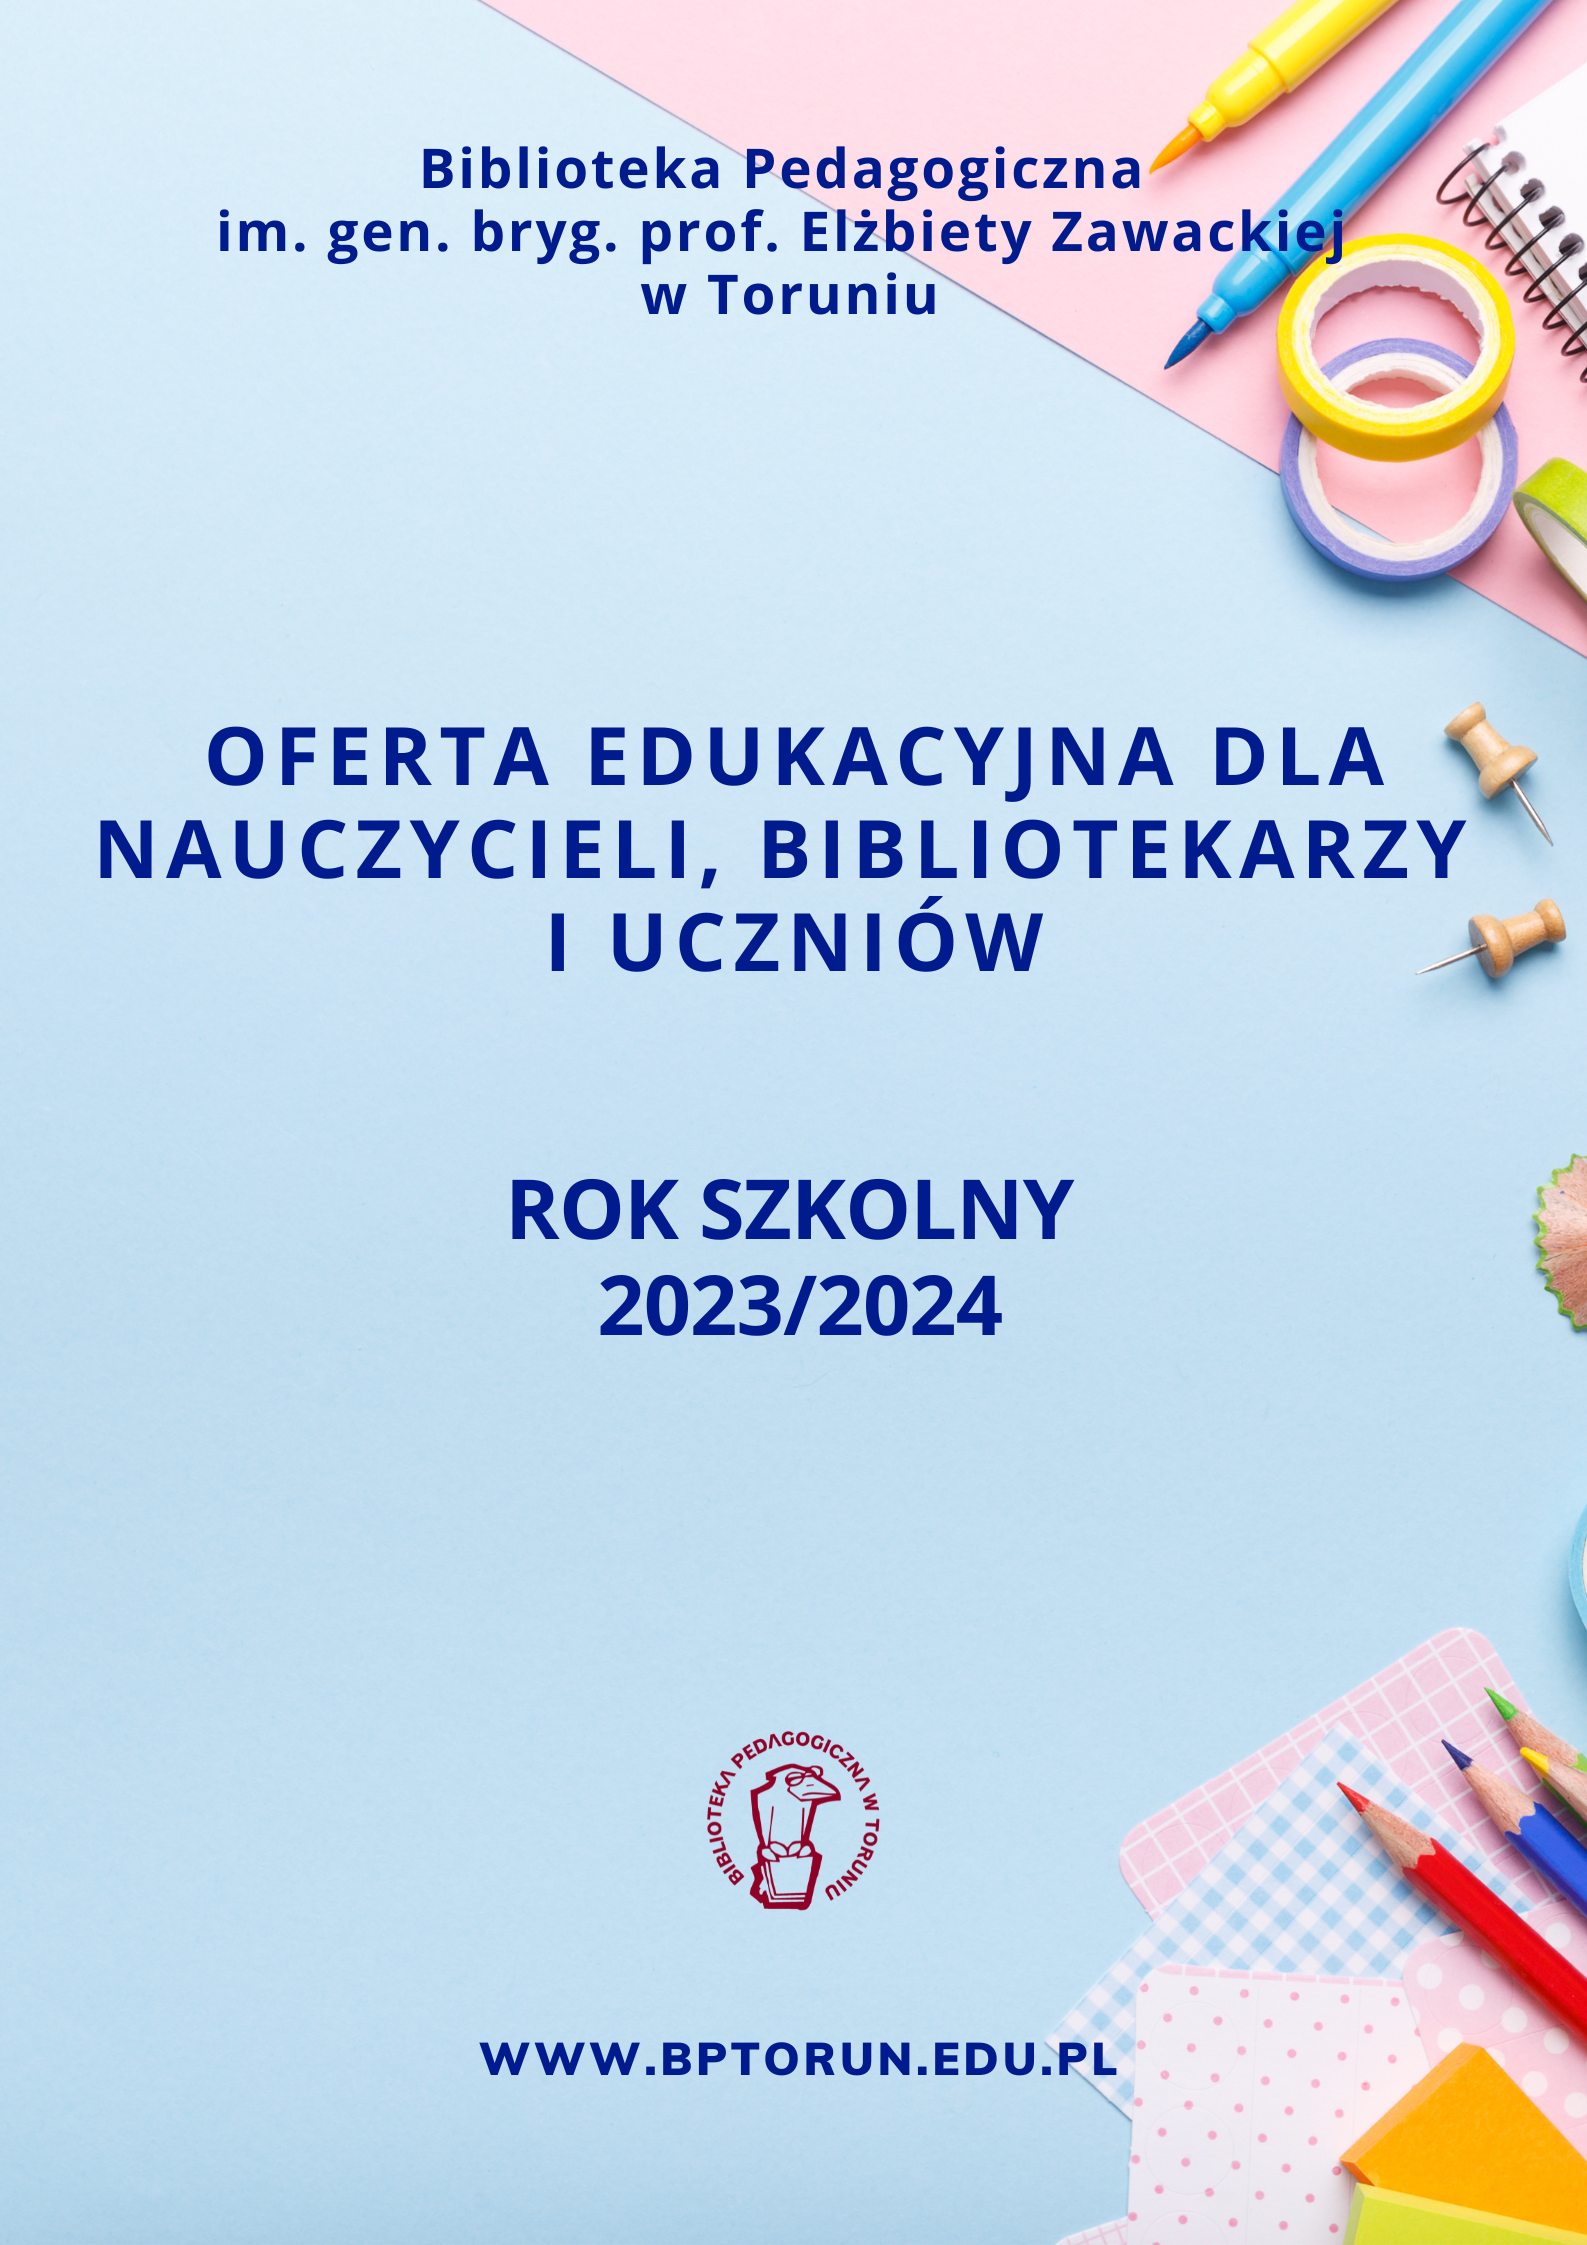 Pierwsza strona prezentacji Oferta edukacyjna dla nauczycieli, bibliotekarzy i uczniów. Rok szkolny 2023/2024.